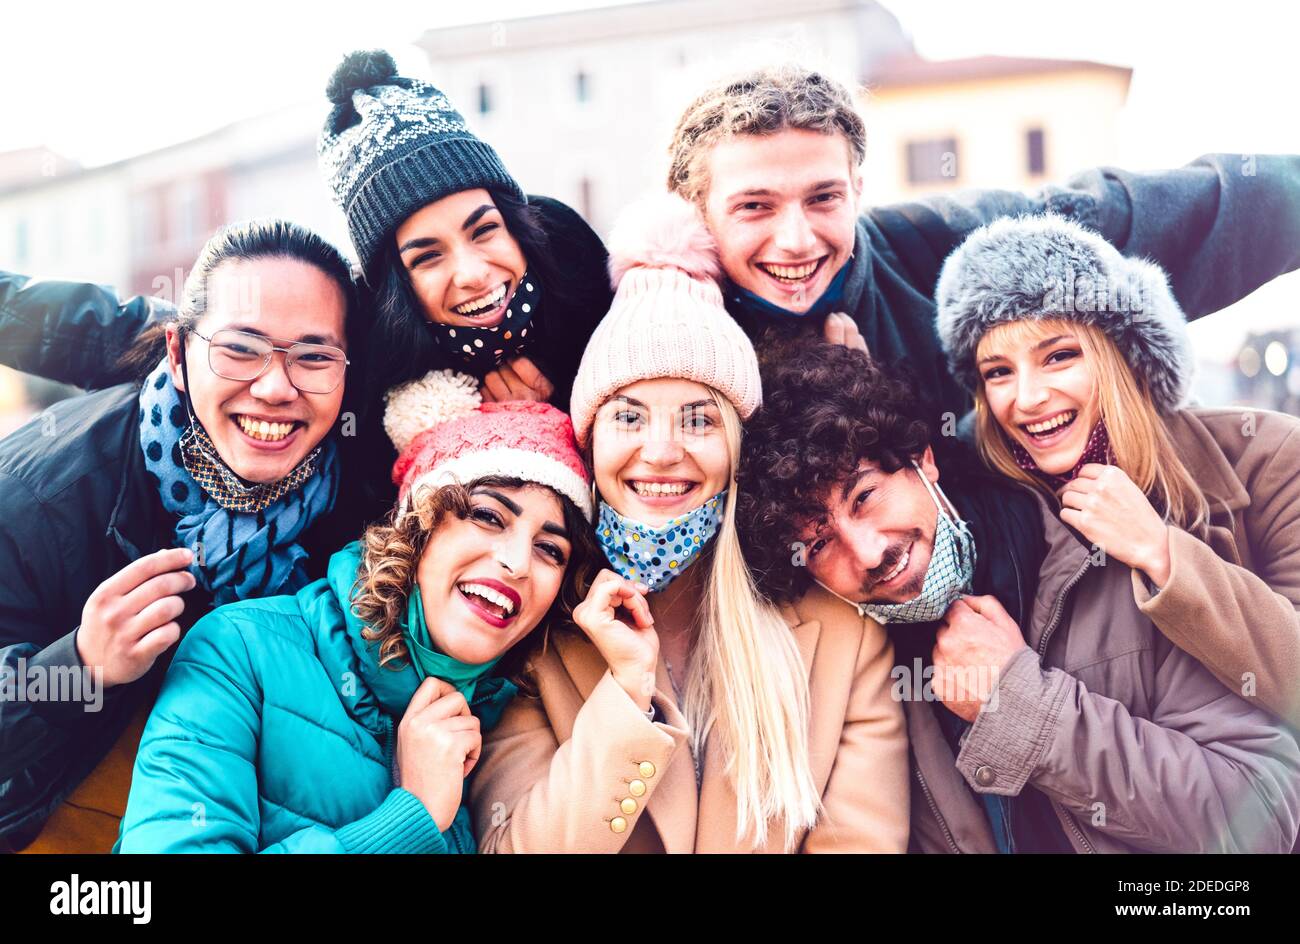 Amici multirazziali che prendono selfie con maschera aperta e inverno Vestiti - nuovo concetto di amicizia normale con la gente milenial che ha divertimento insieme Foto Stock